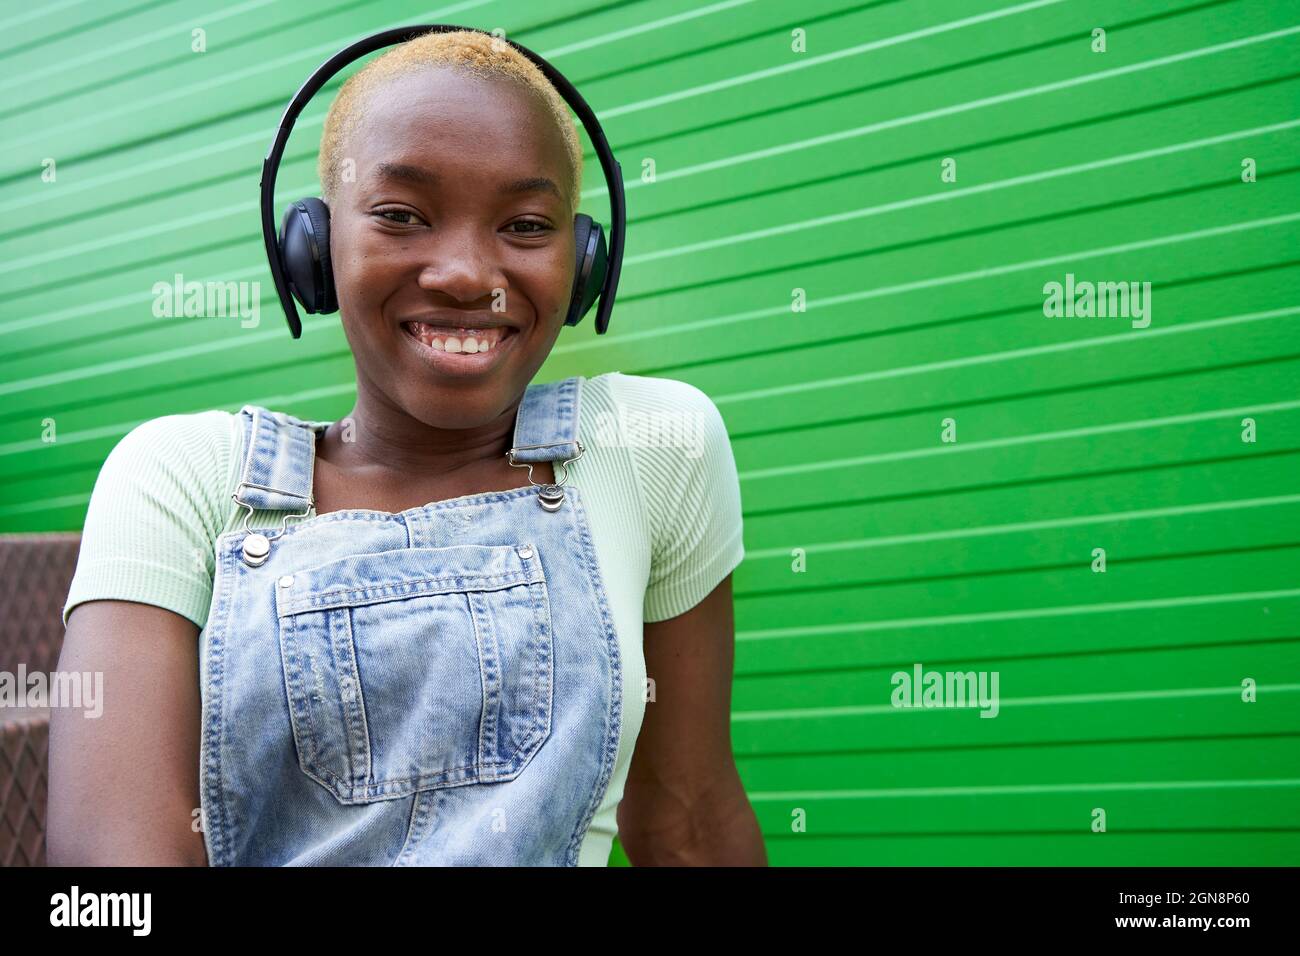 Glückliche Frau mit kurzen blonden Haaren, die Musik über kabellose Kopfhörer an der grünen Wand hört Stockfoto